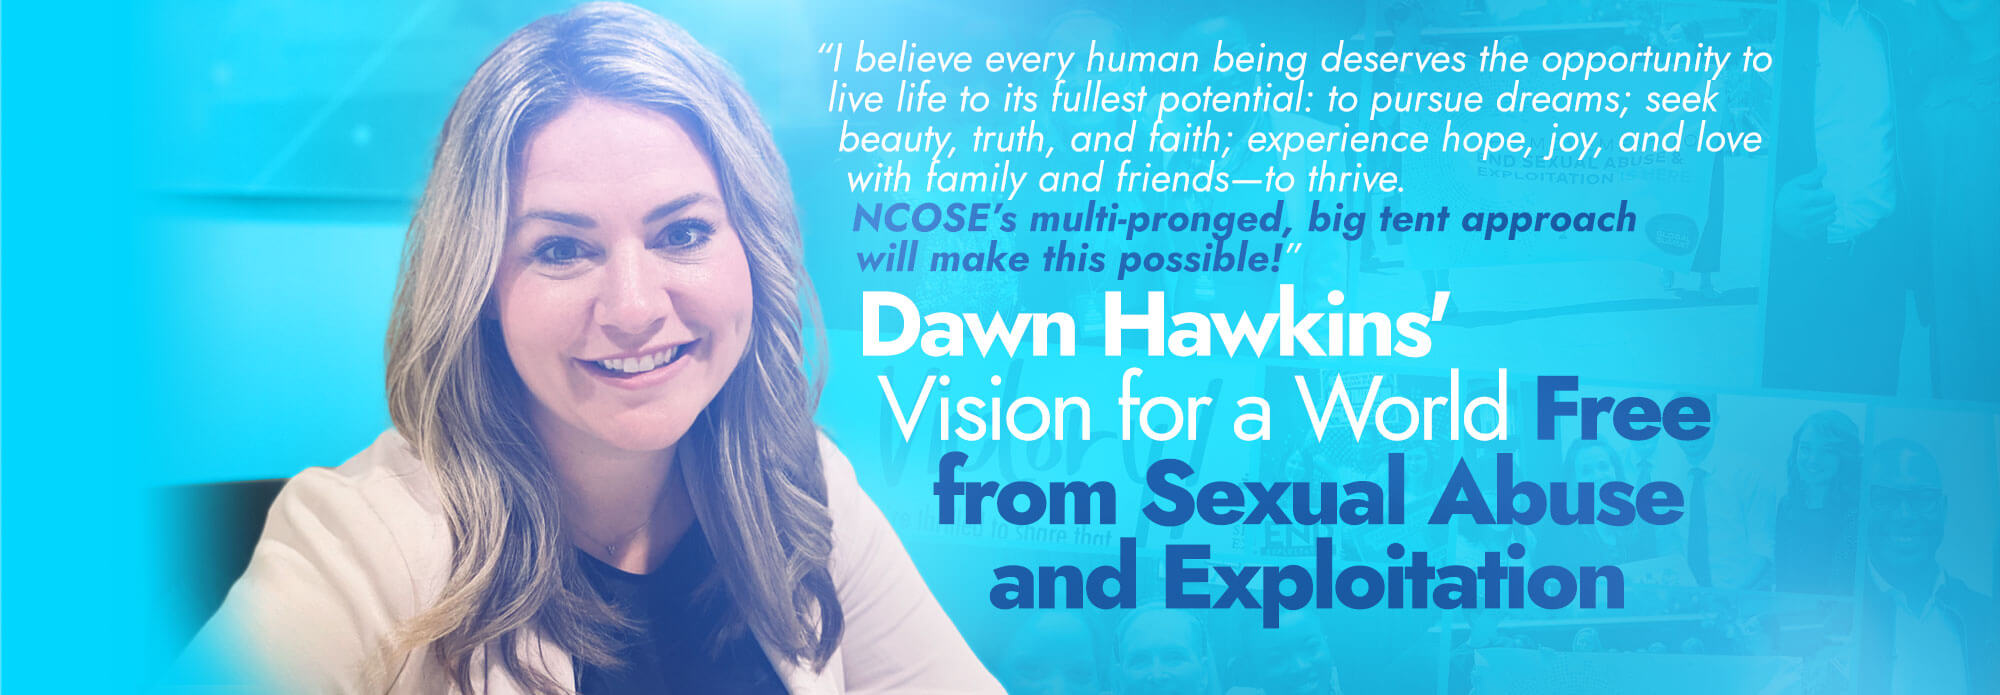 Dawn Hawkins CEO